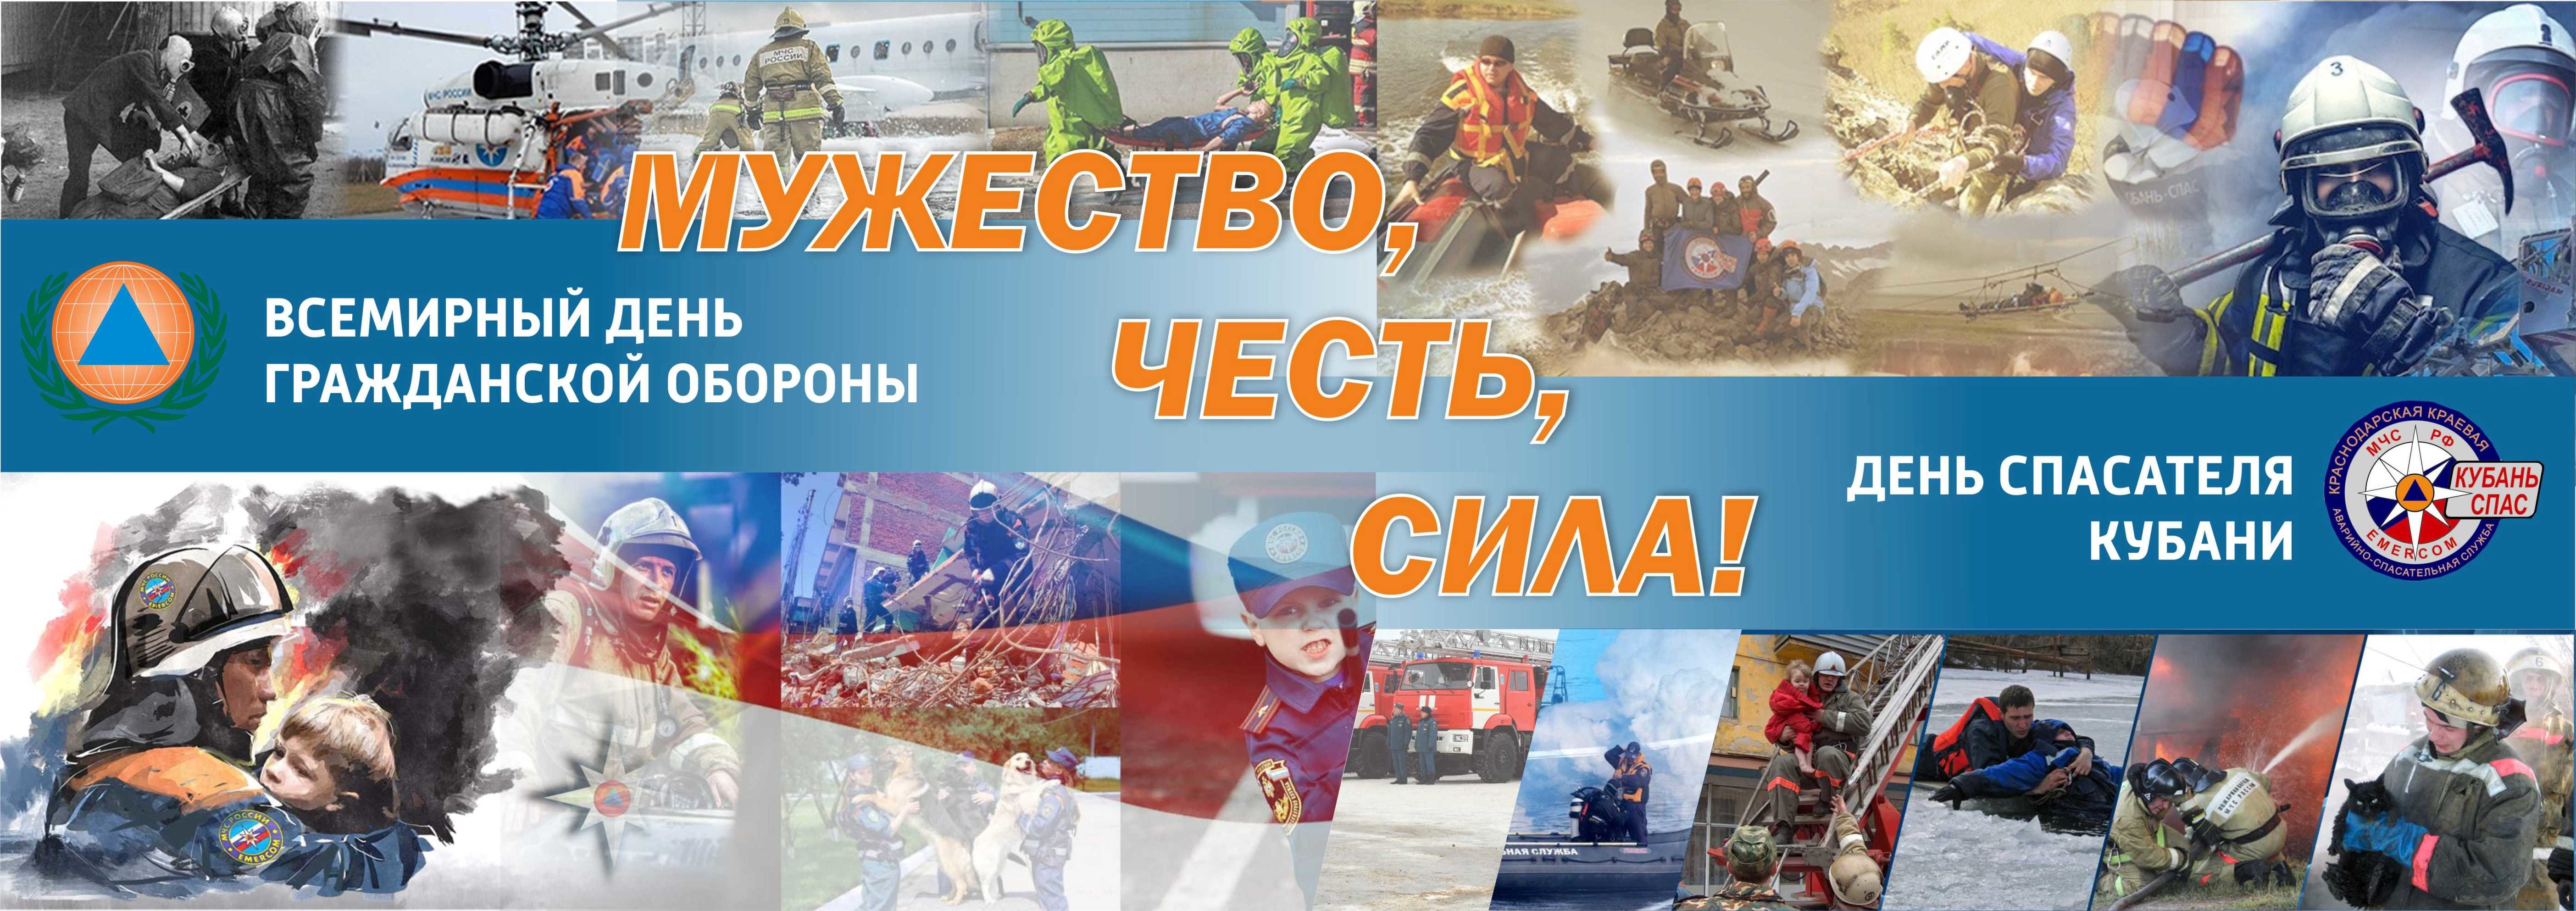 Всемирный день гражданской обороны и День спасателей Краснодарского края